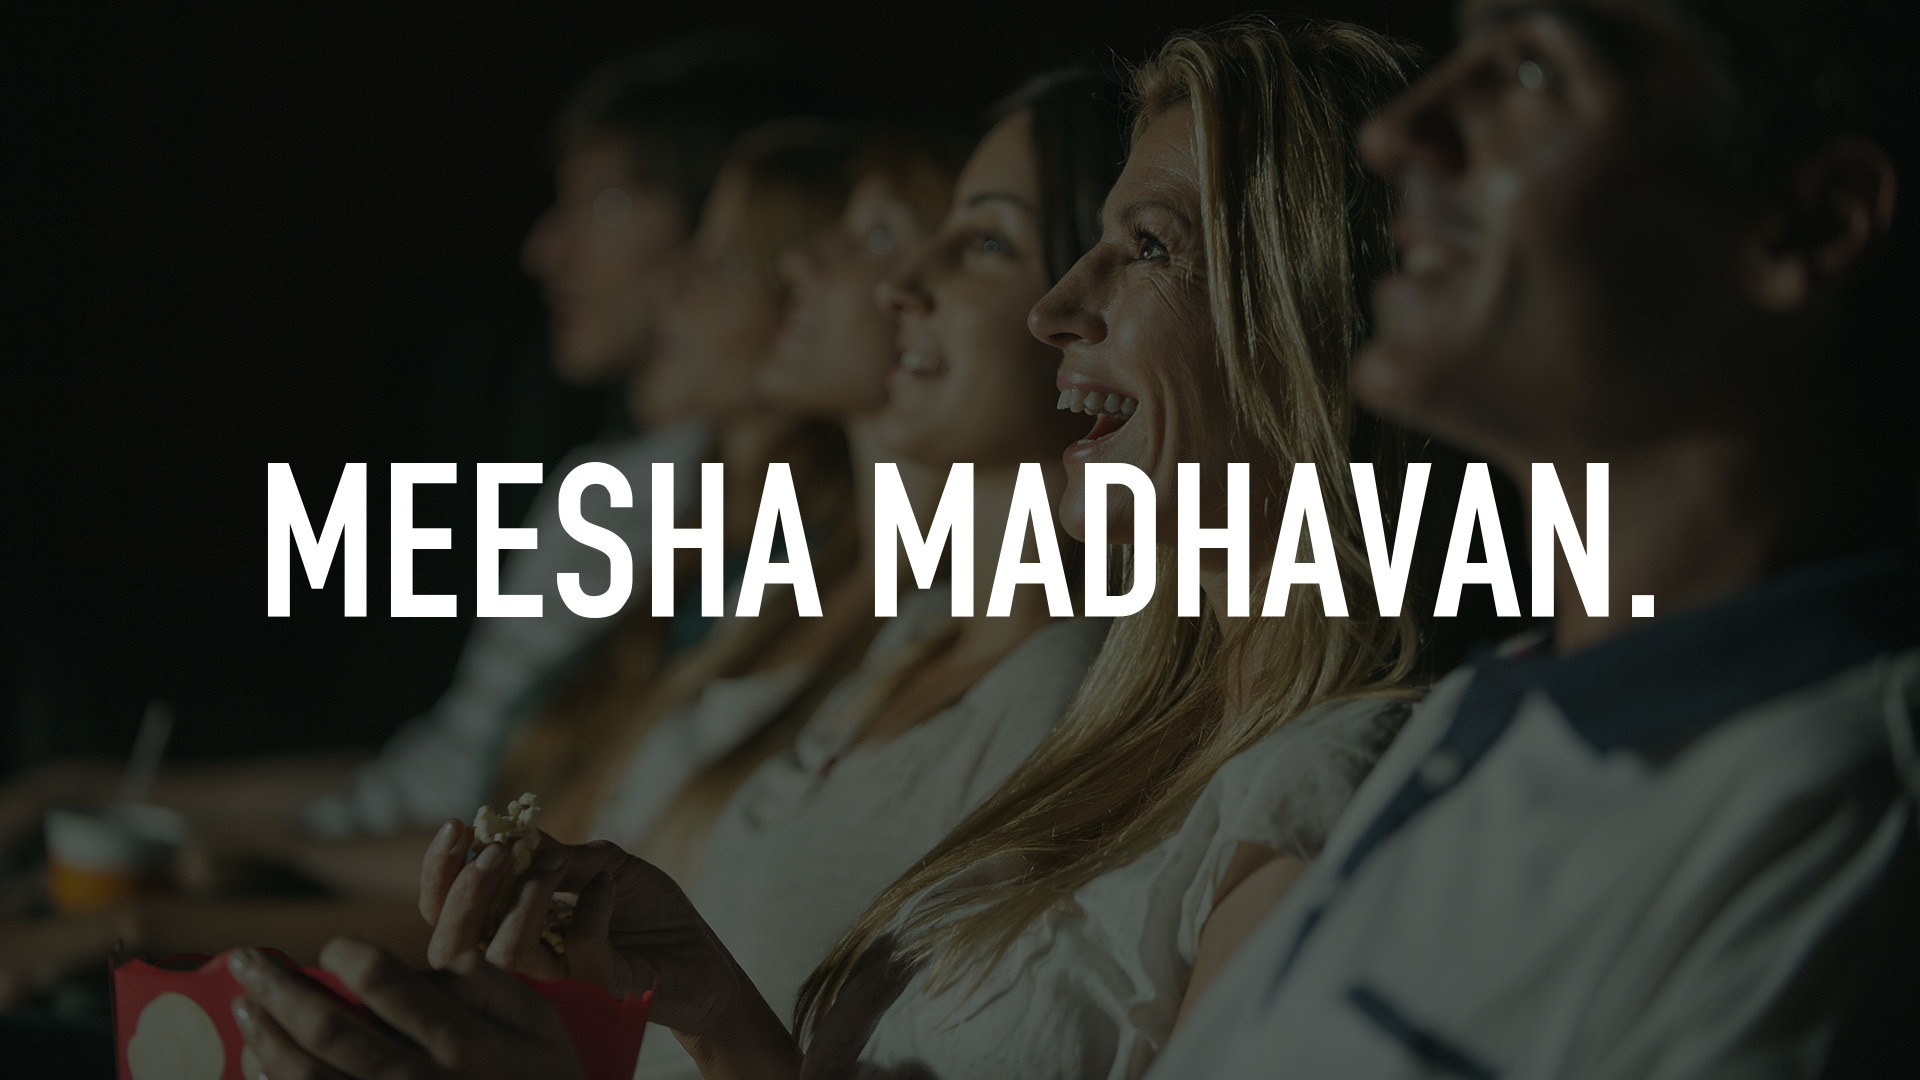 meesha madhavan cast